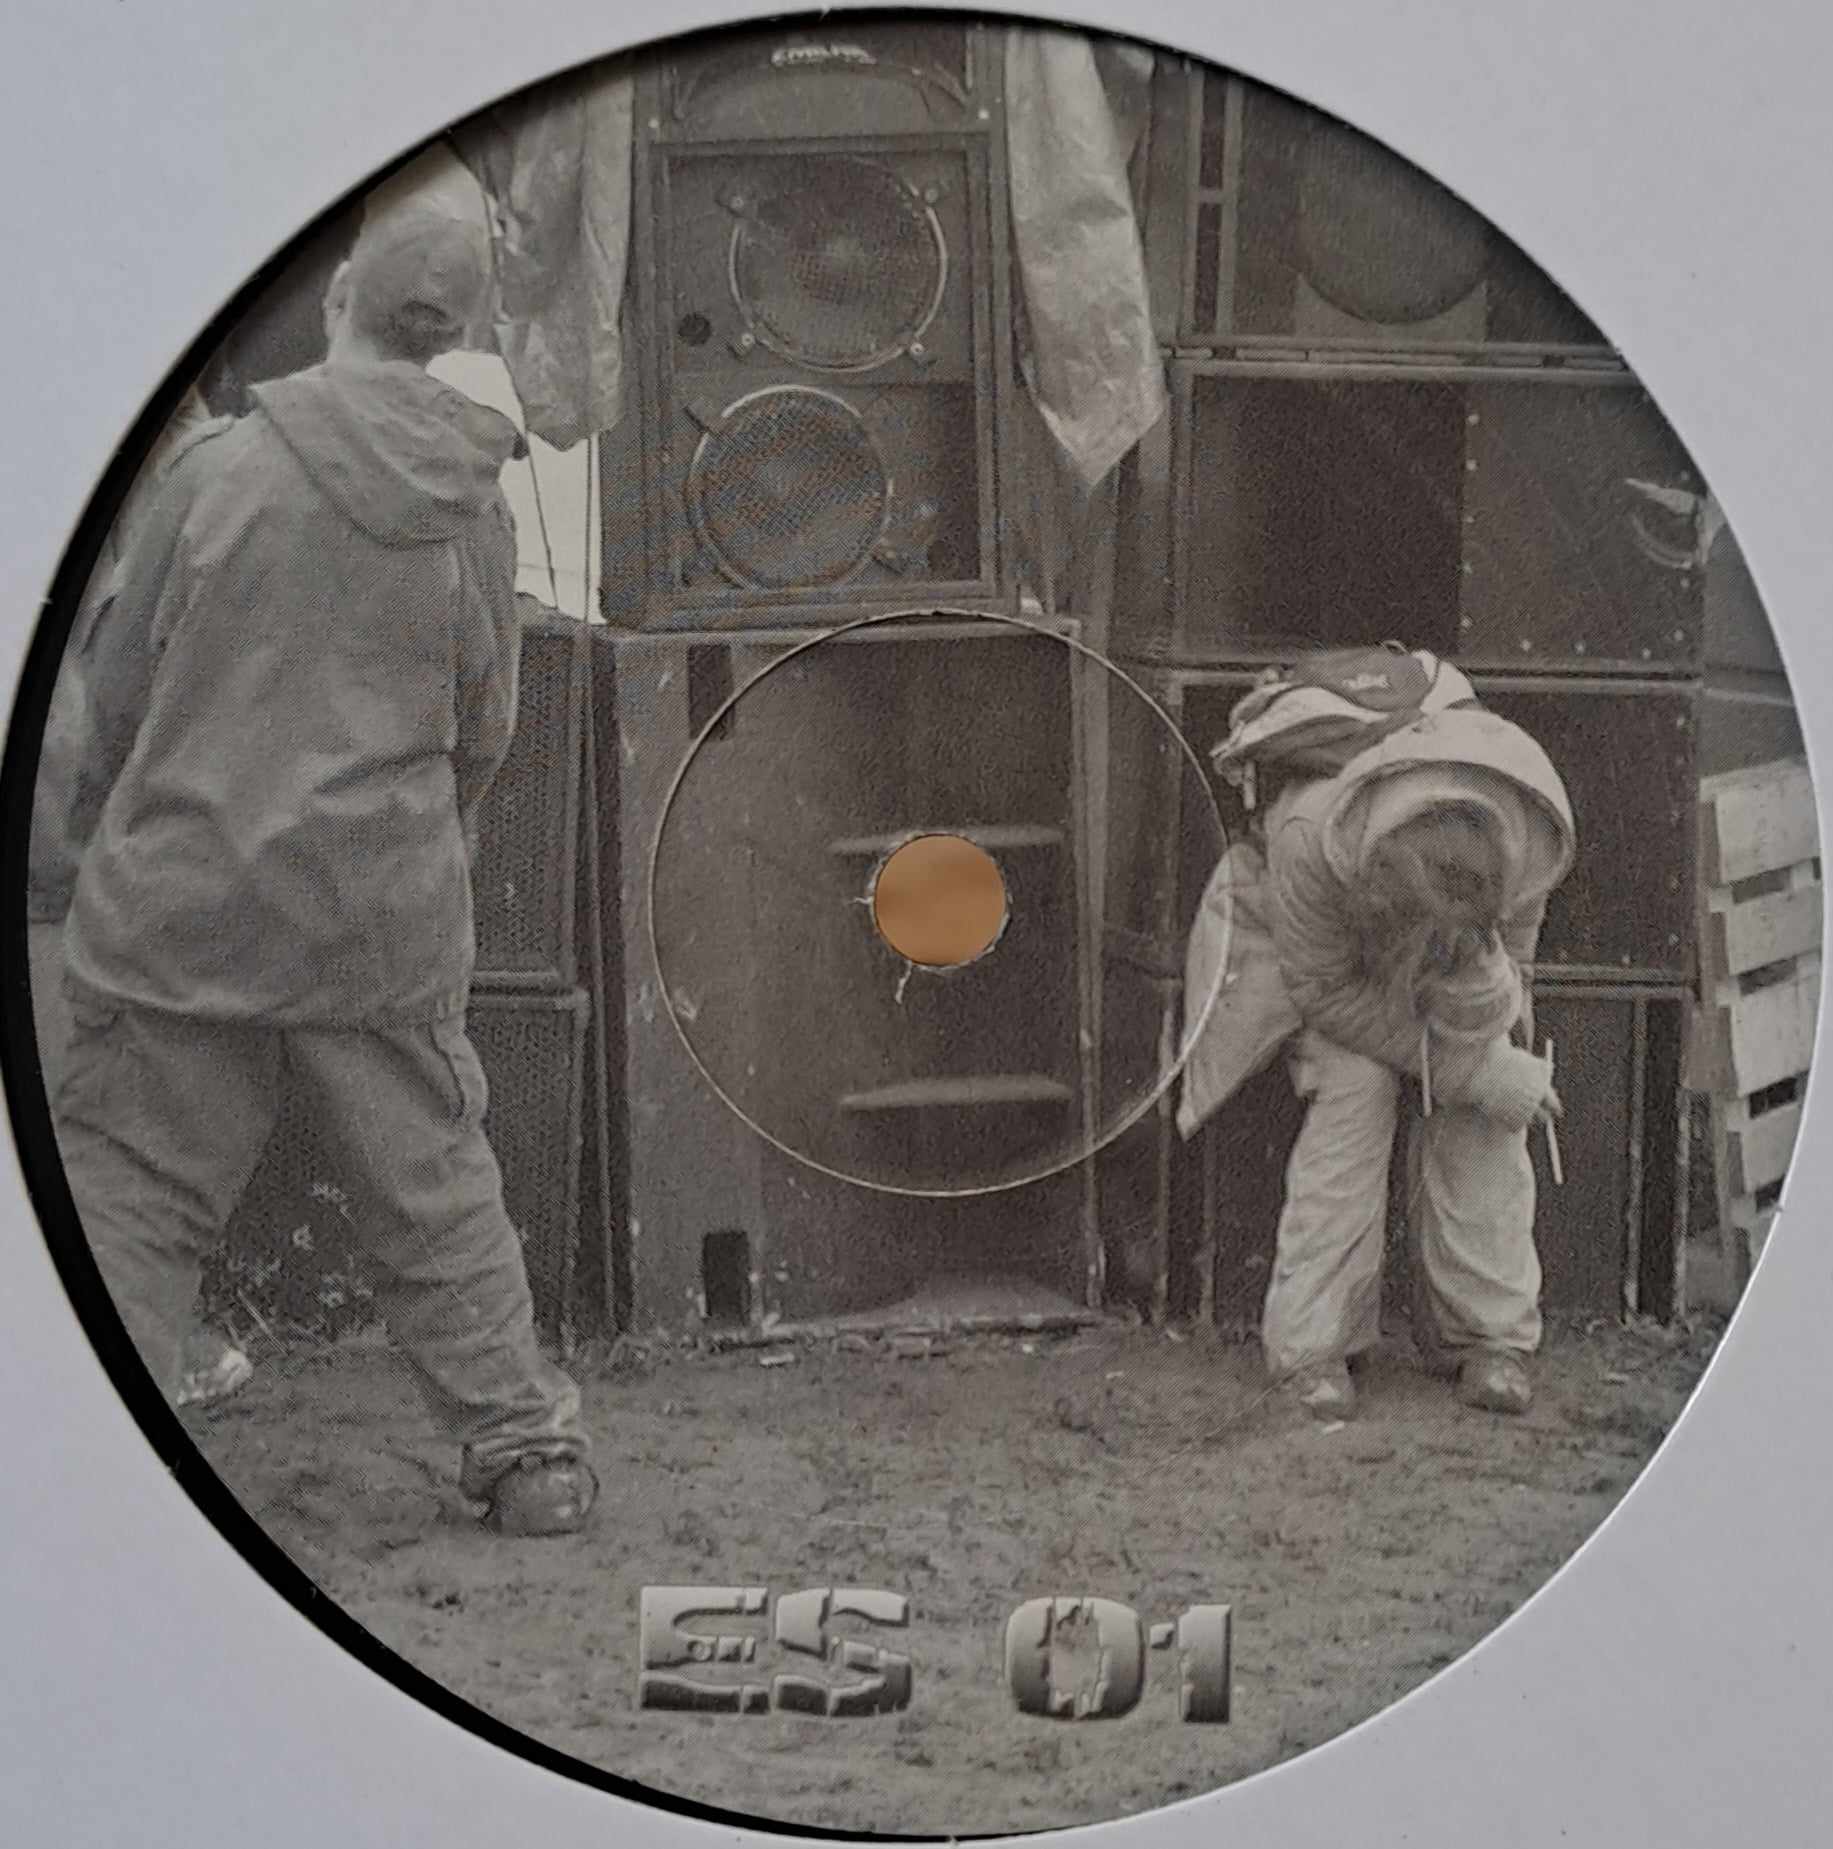 Les Enfants Sages 01 - vinyle freetekno